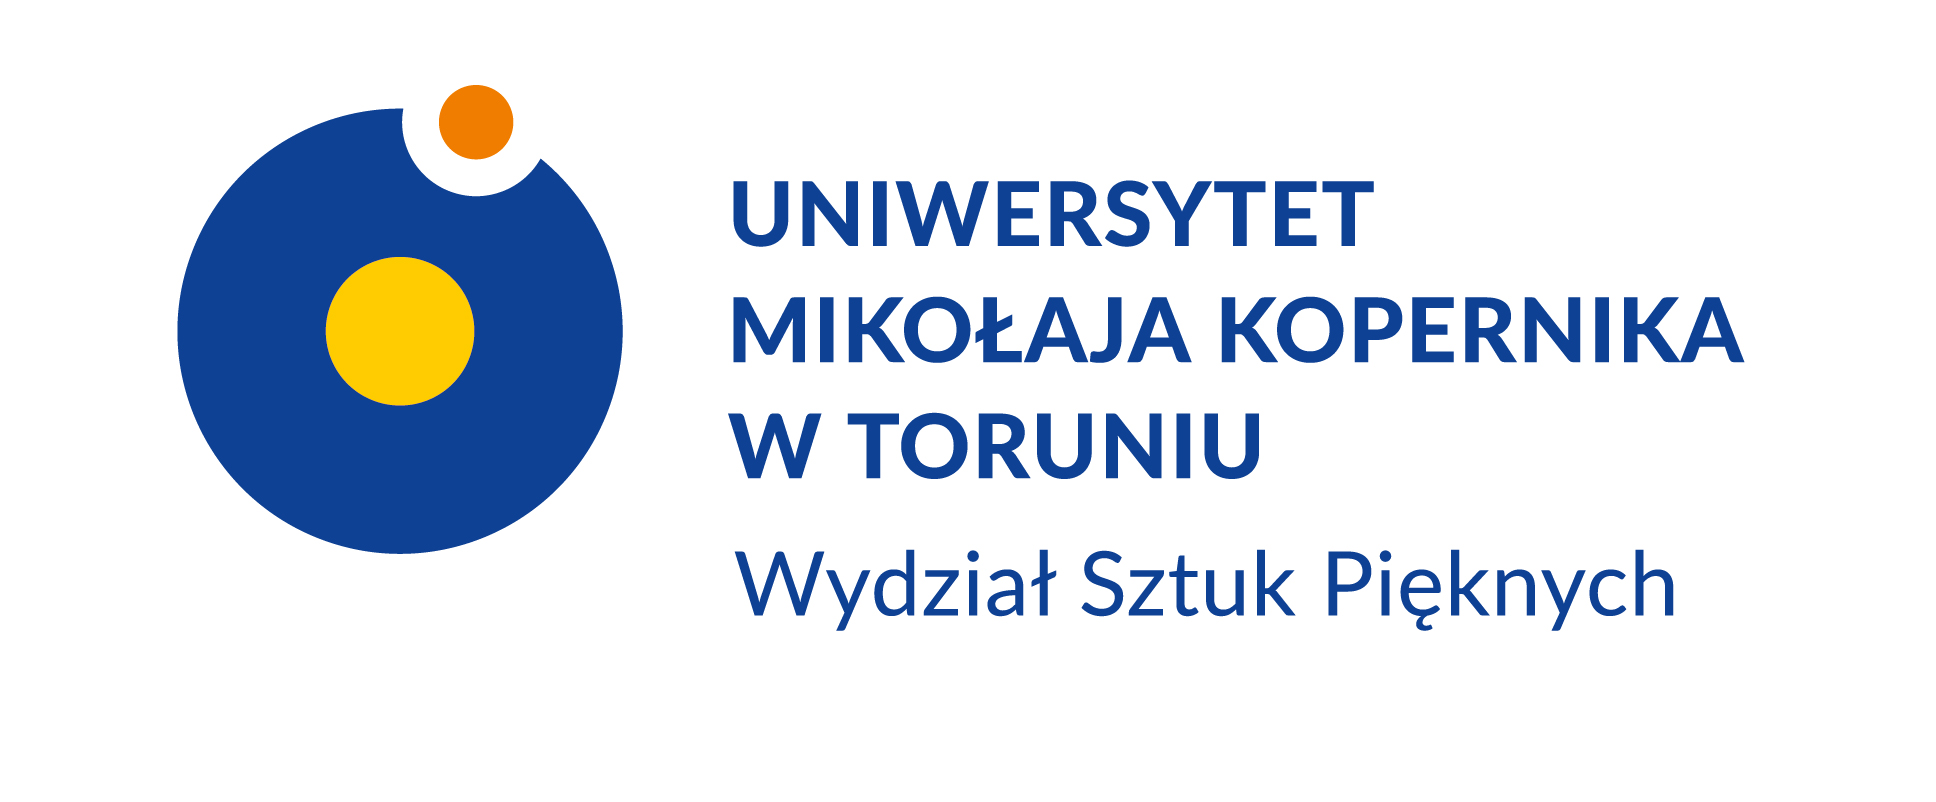 Logotyp Uniwersytetu im. Mikołaja Kopernika